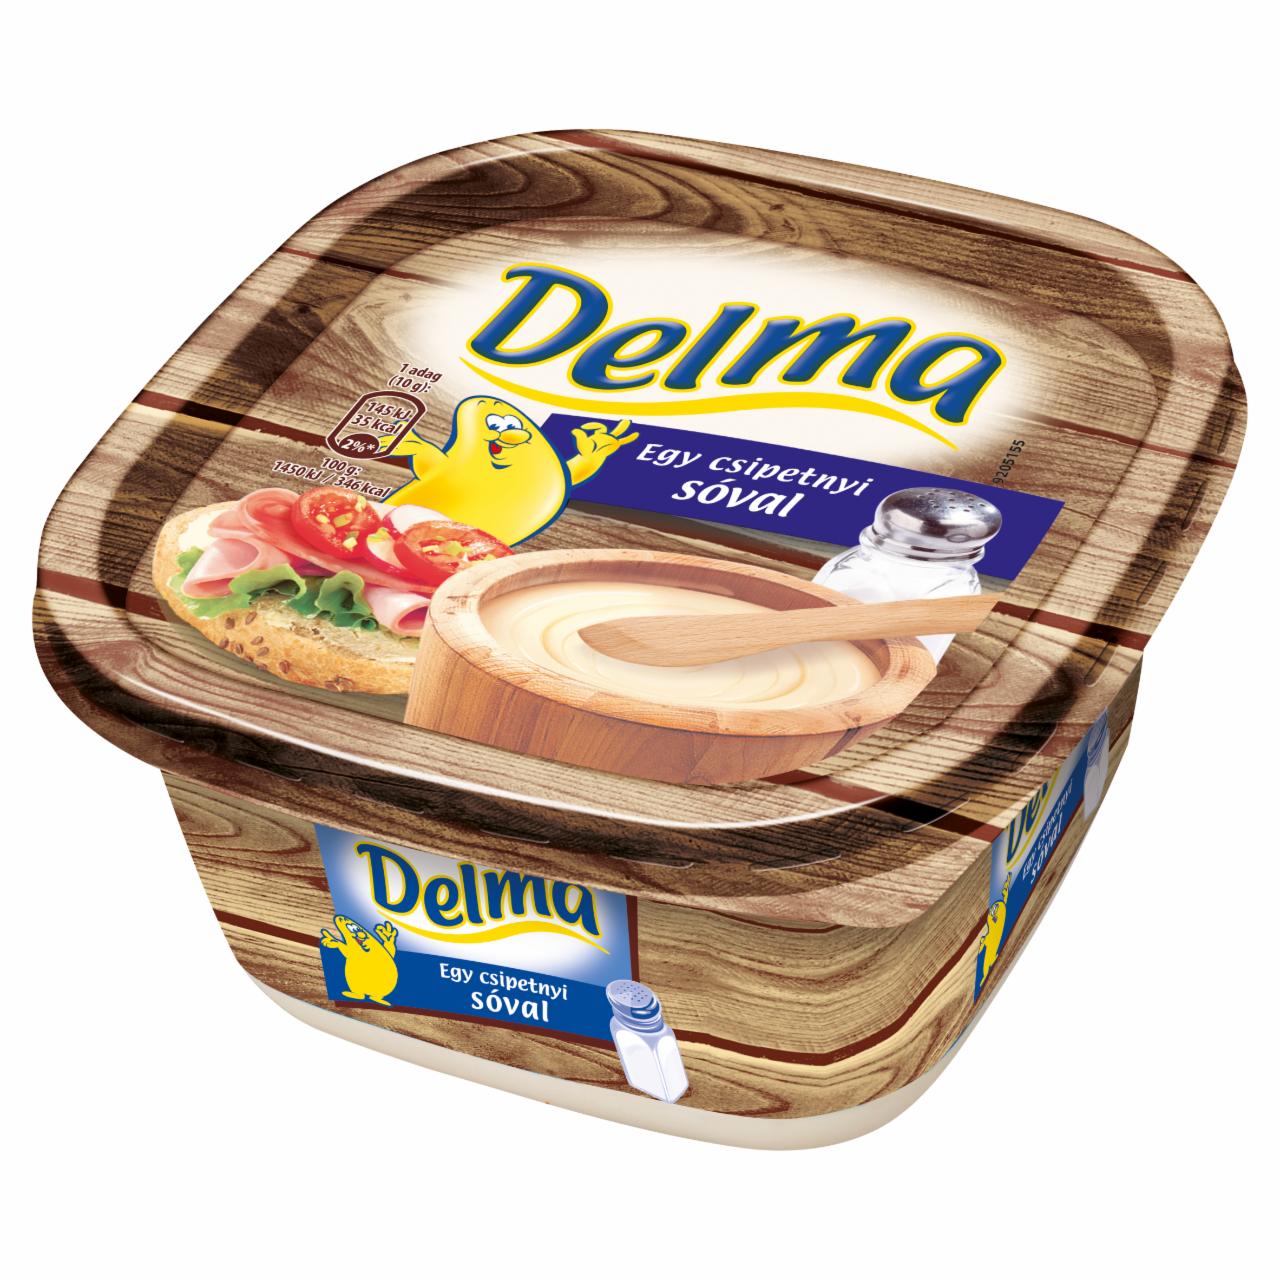 Képek - Delma egy csipetnyi sóval light csészés margarin 500 g